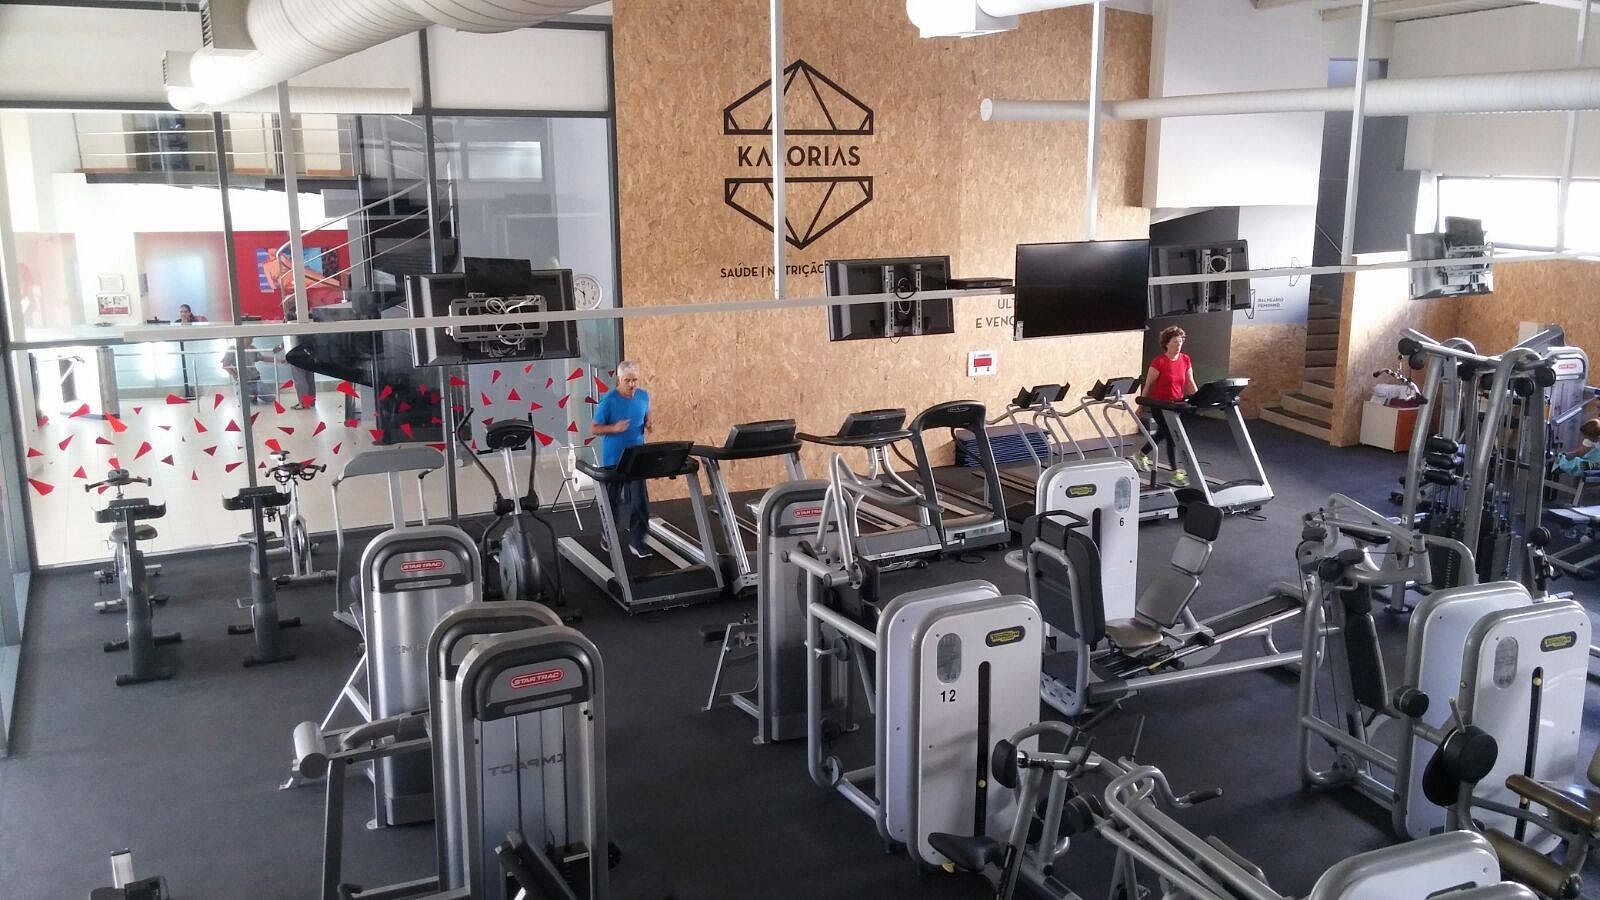 Kalorias Sines gym in Sines, Portugal